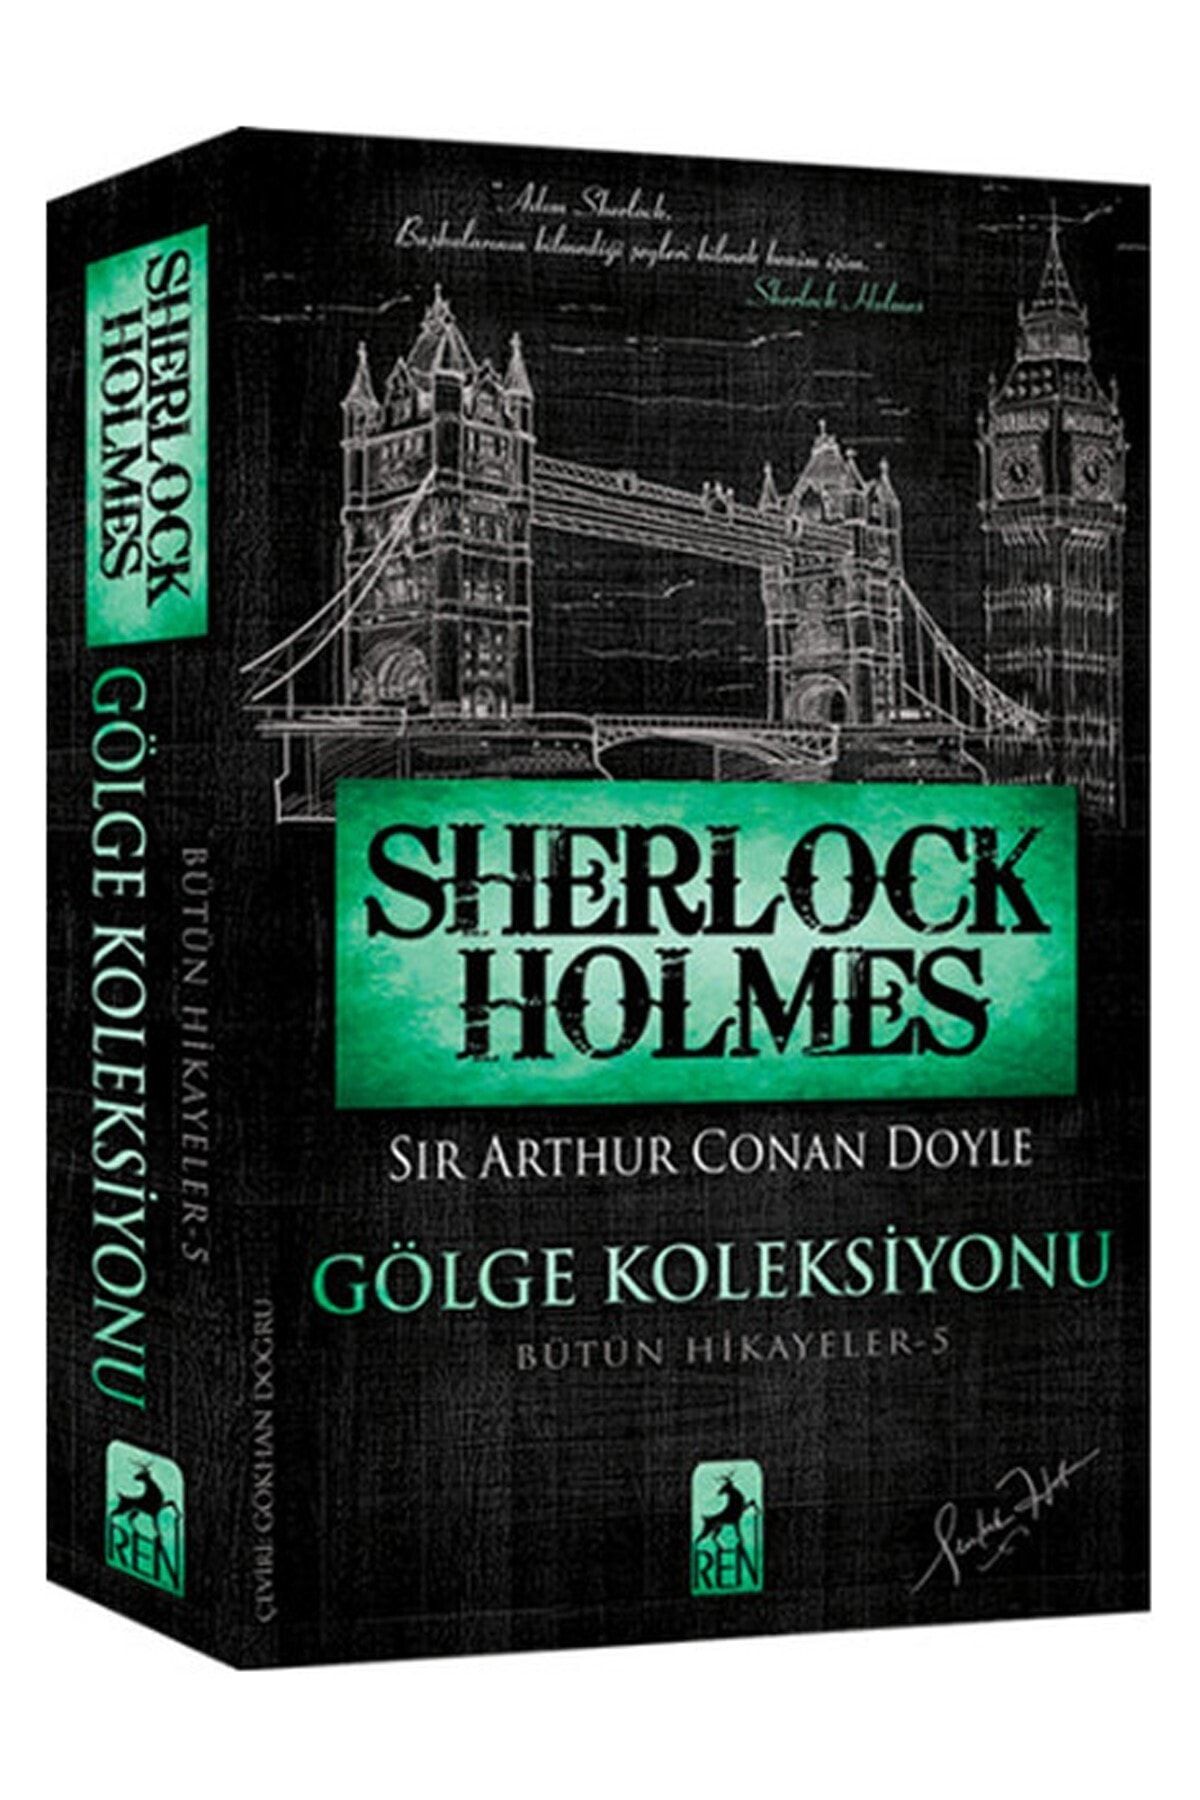 Ren Kitap Sherlock Holmes - Gölge Koleksiyonu - Bütün Hikayeler 5 - Sir Arthur Conan Doyle